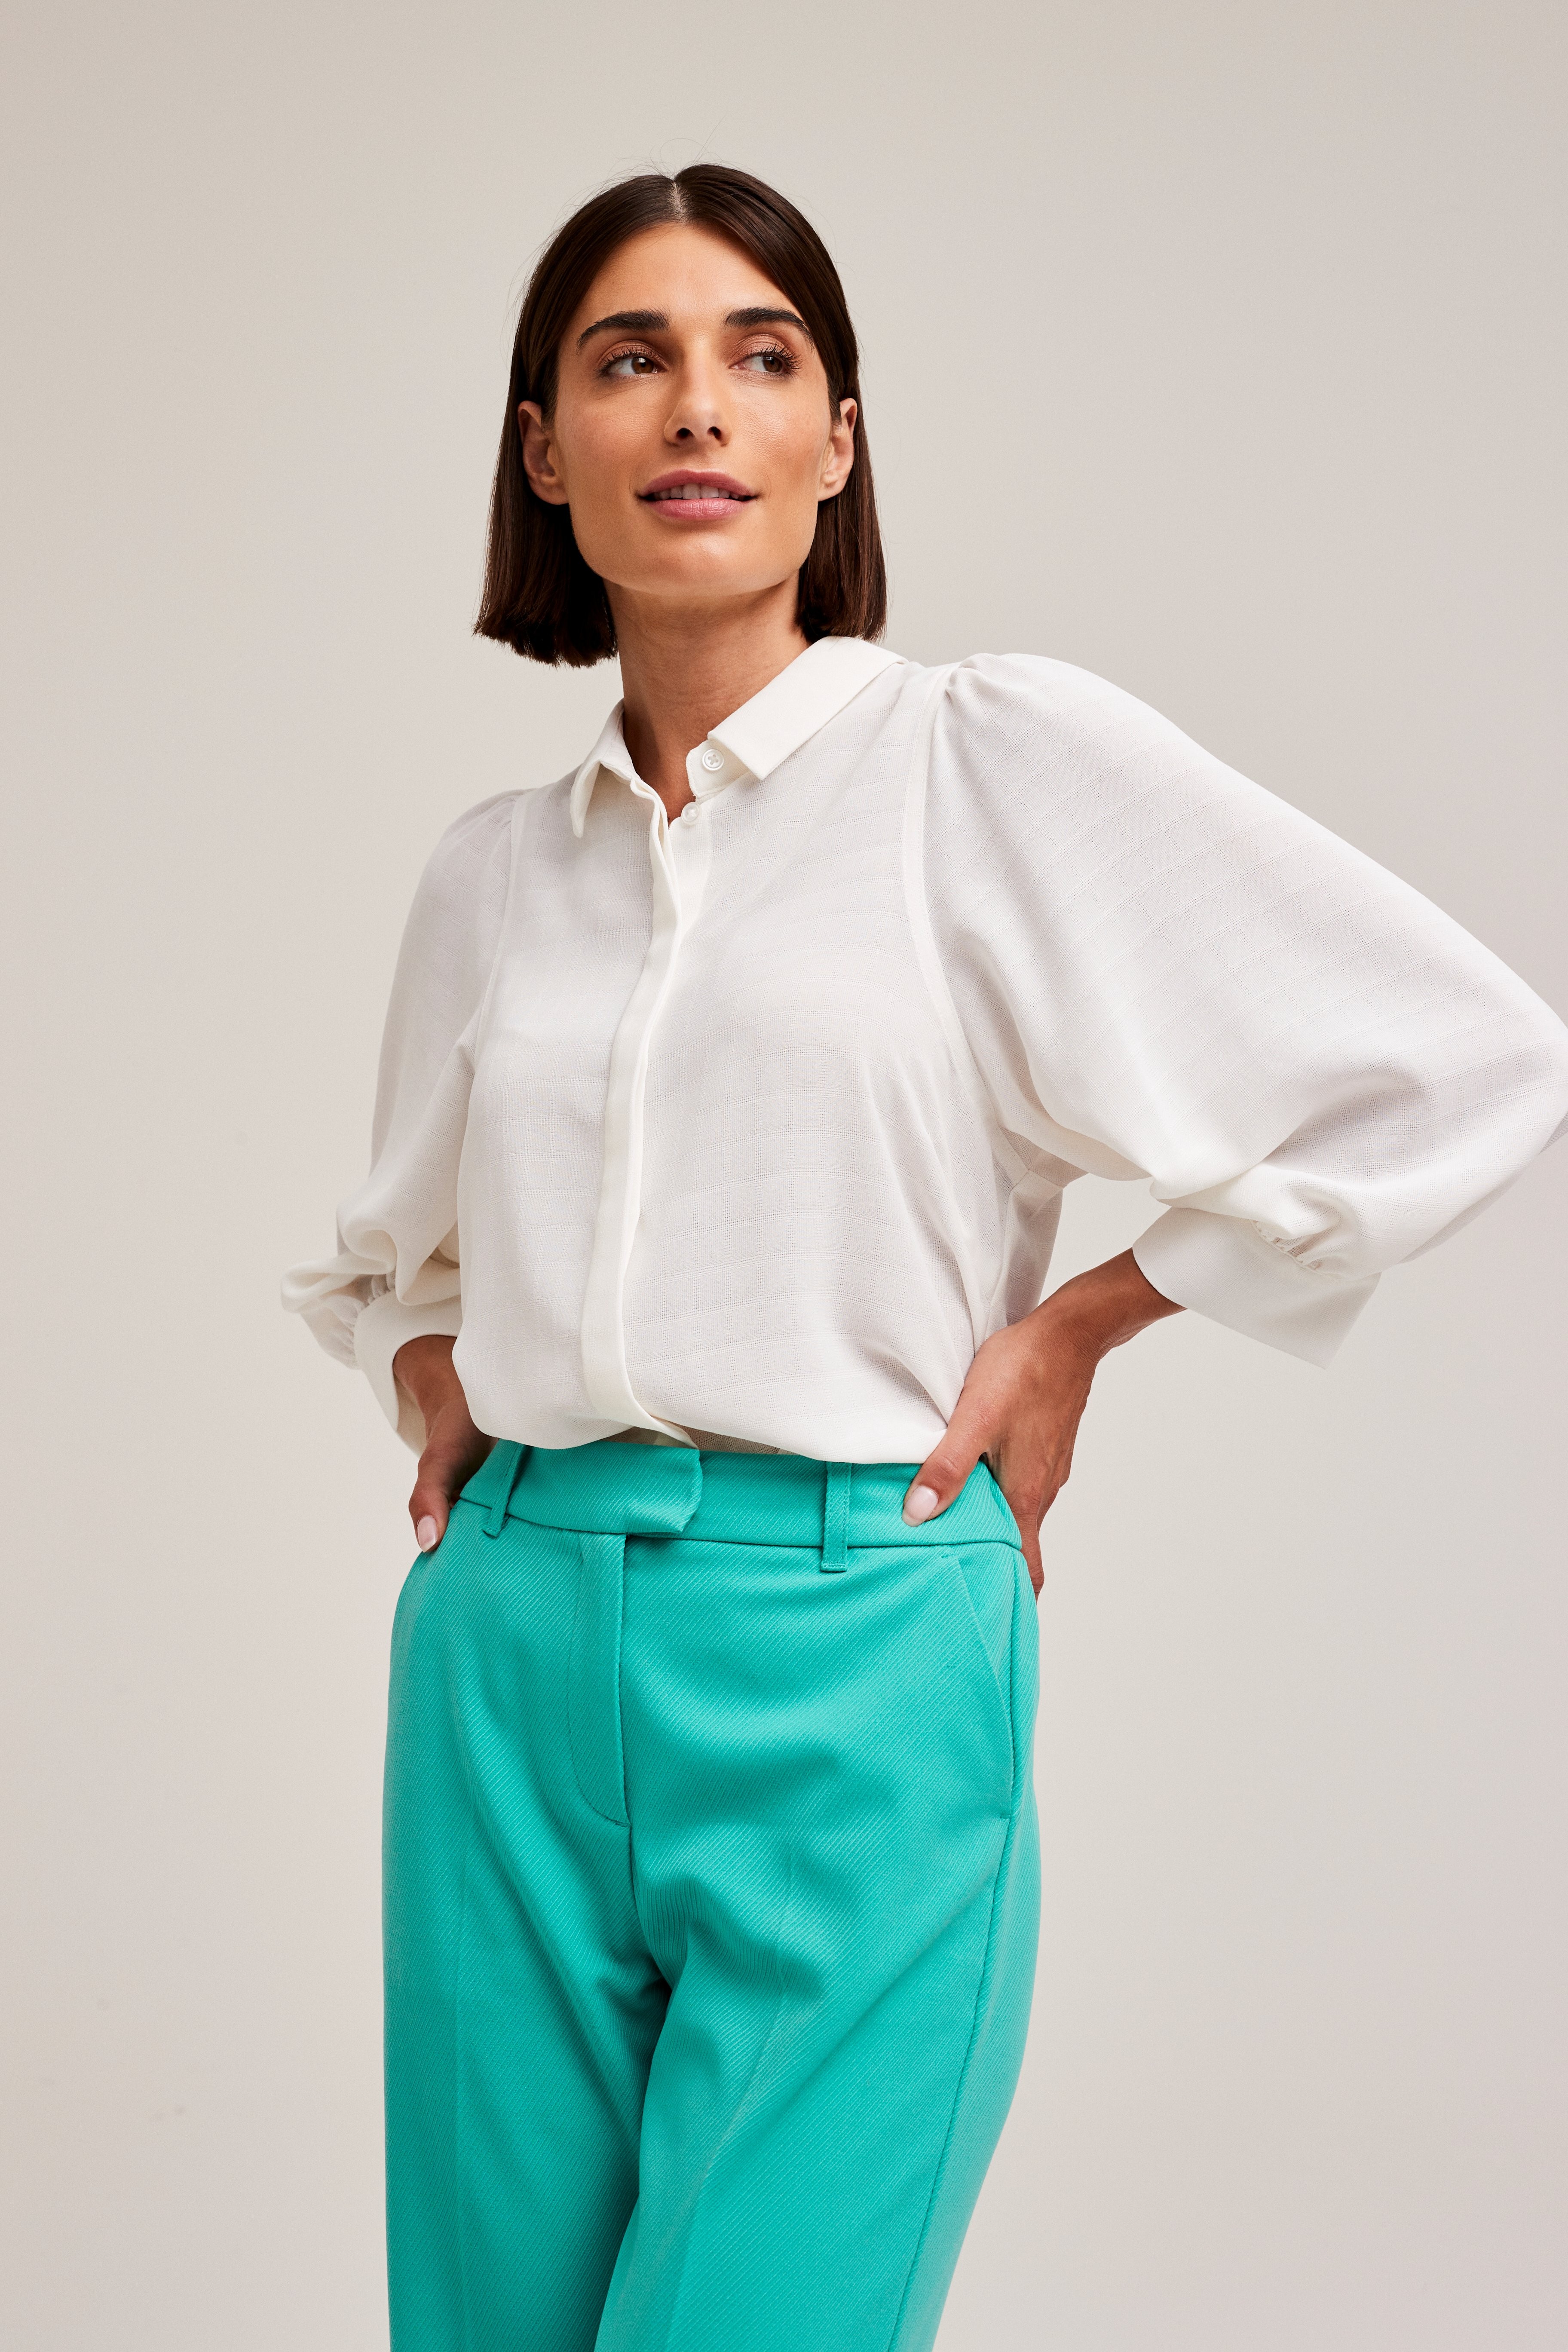 bevind zich Typisch straffen ROSALINOS - blouse lange mouwen - wit | CKS Fashion